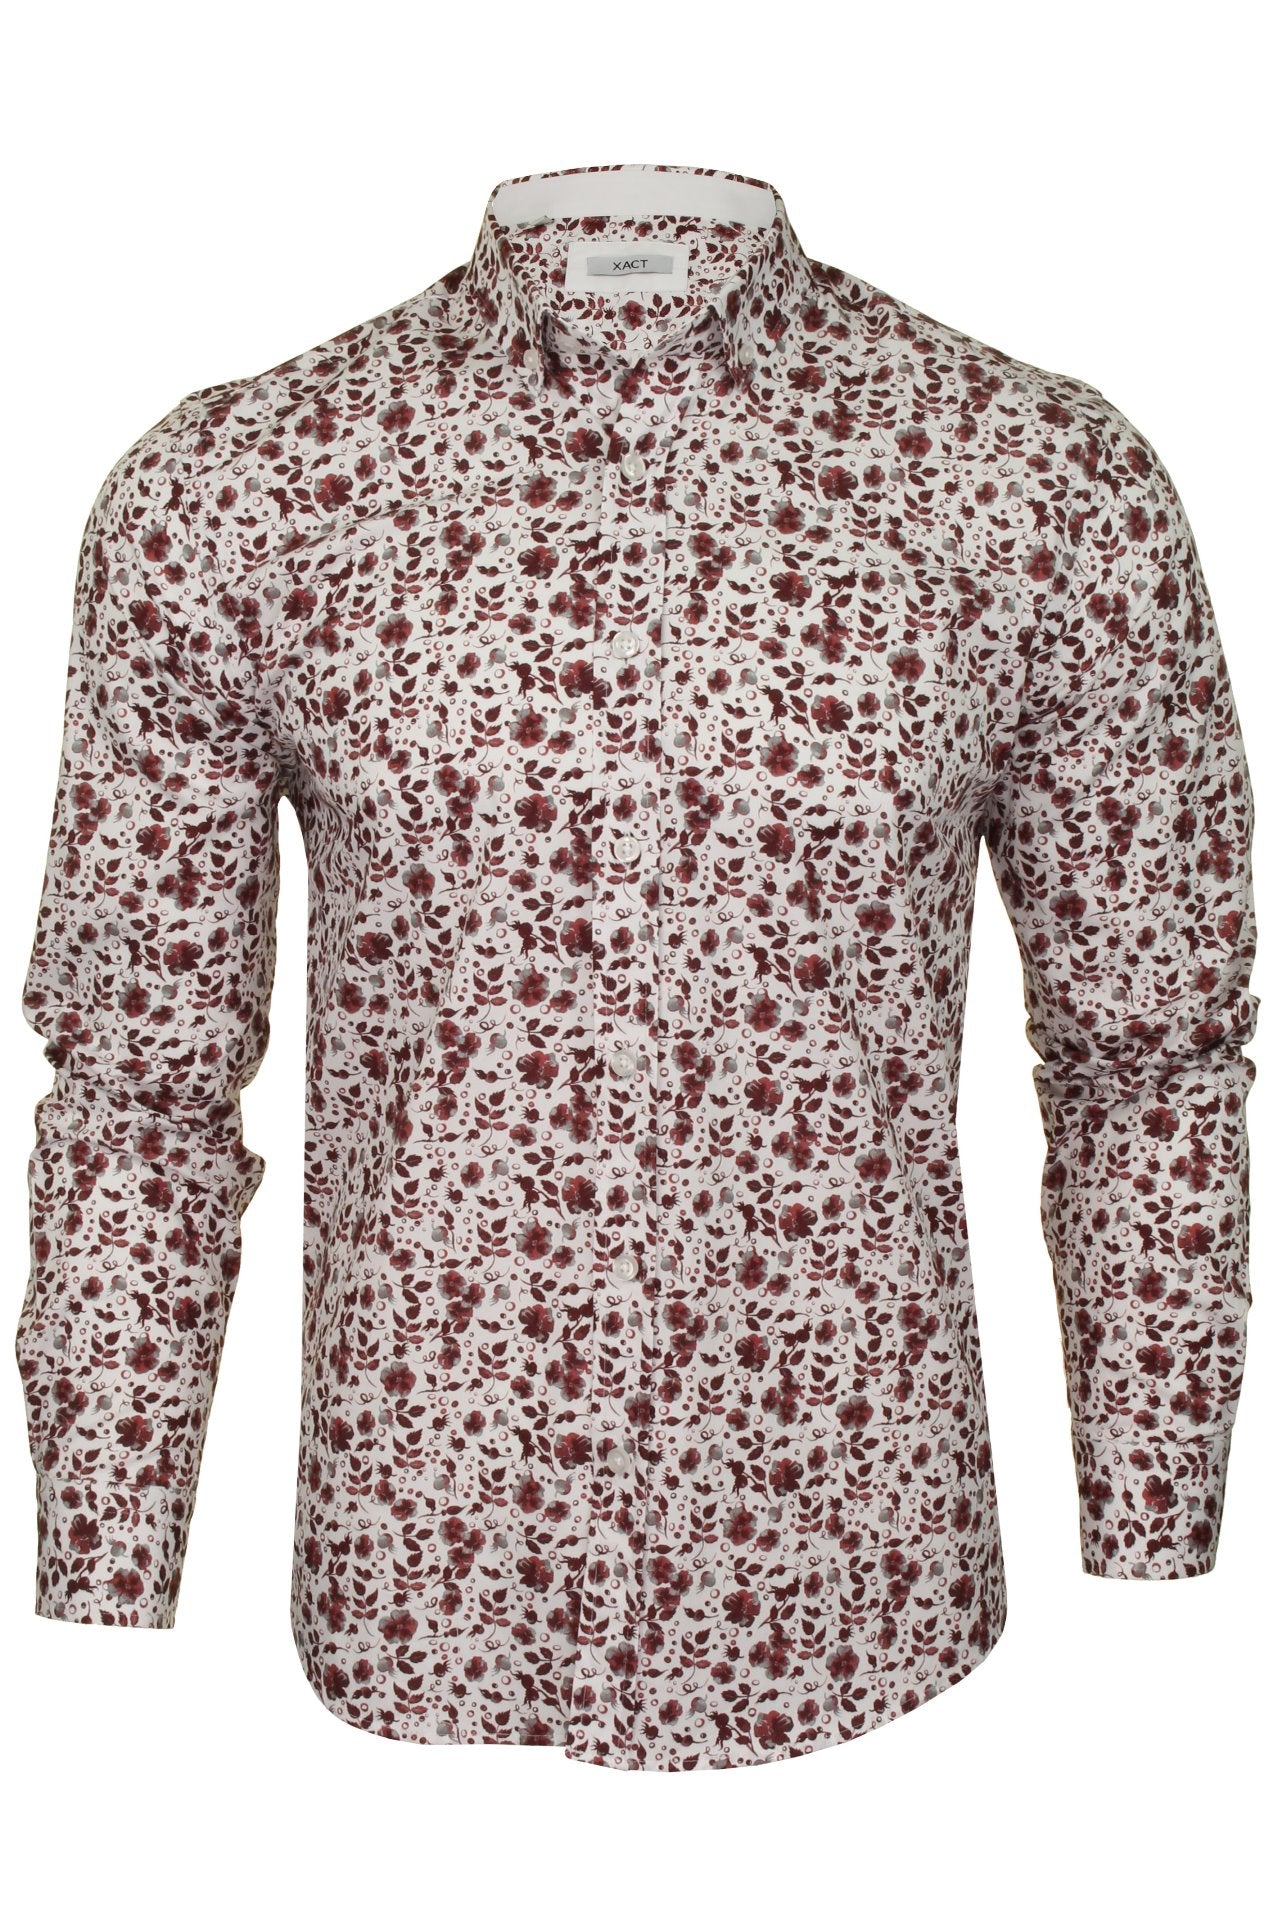 Xact Mens Floral Long Sleeved Shirt-Main Image